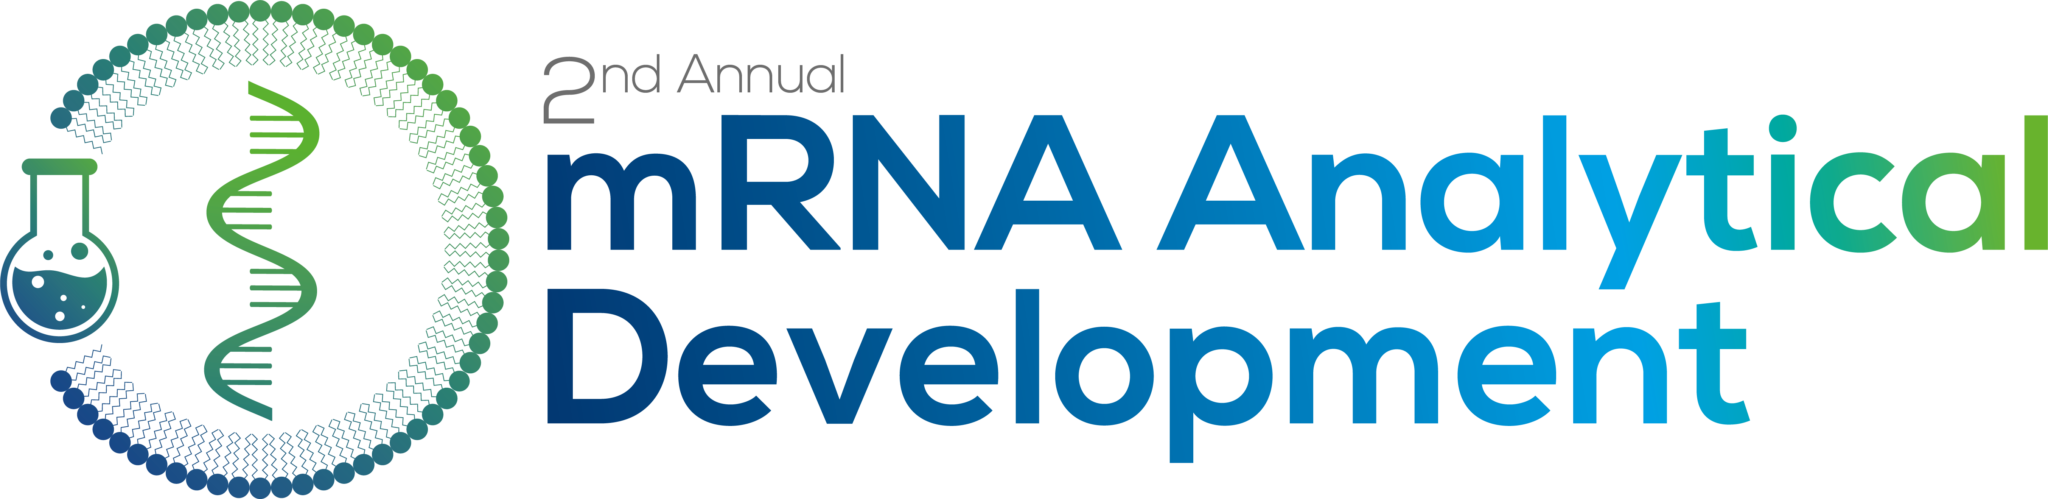 mRNA Analytical Development Summit